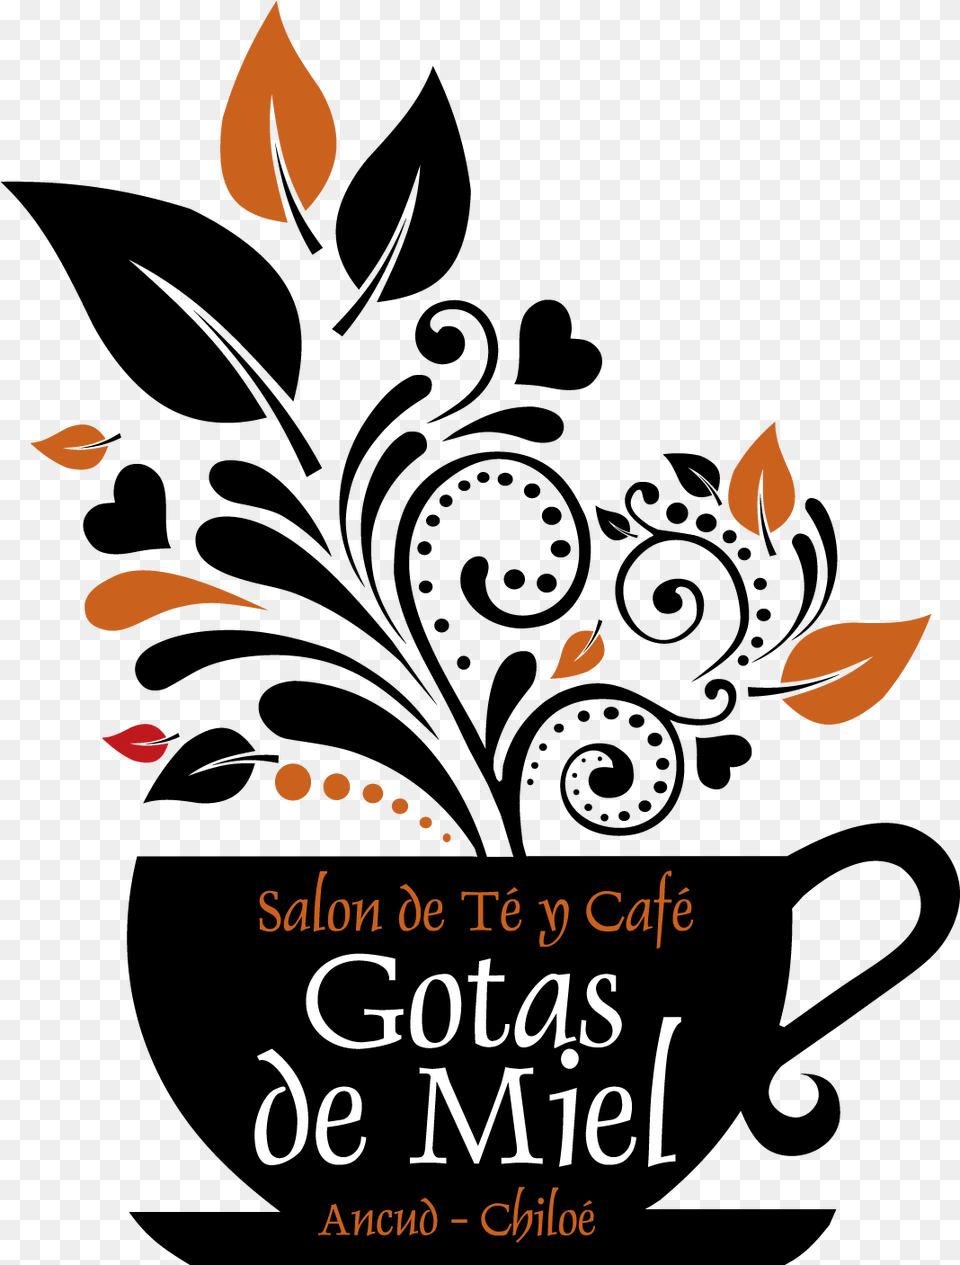 Logo Gotas De Miel Floral Logo Design For Coffee Cup, Advertisement, Poster, Book, Publication Free Transparent Png